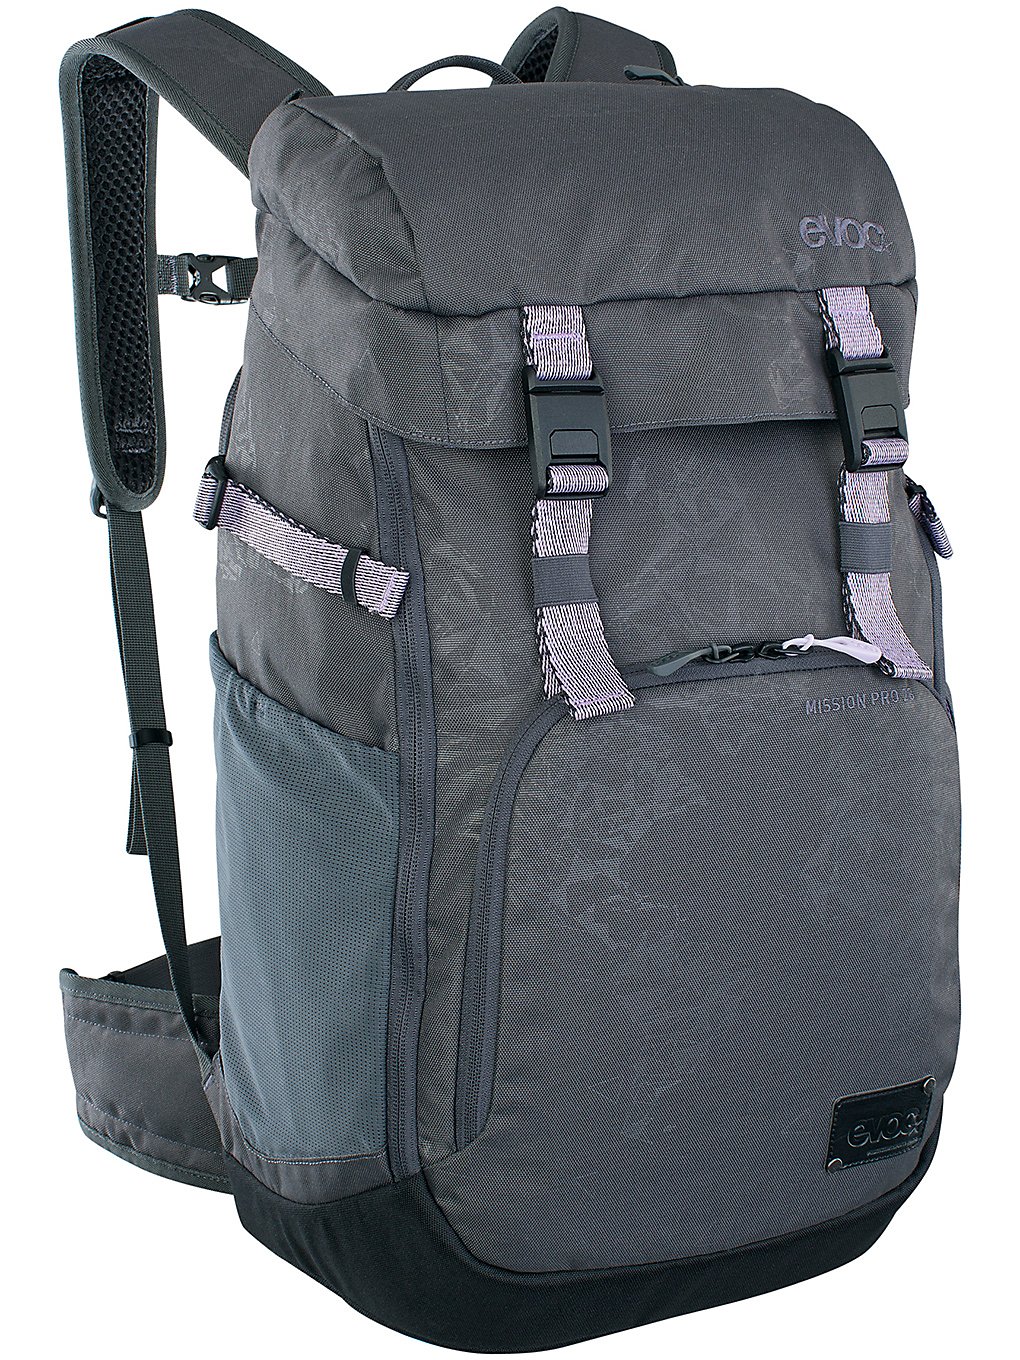 Evoc Mission Pro 28L Backpack blk